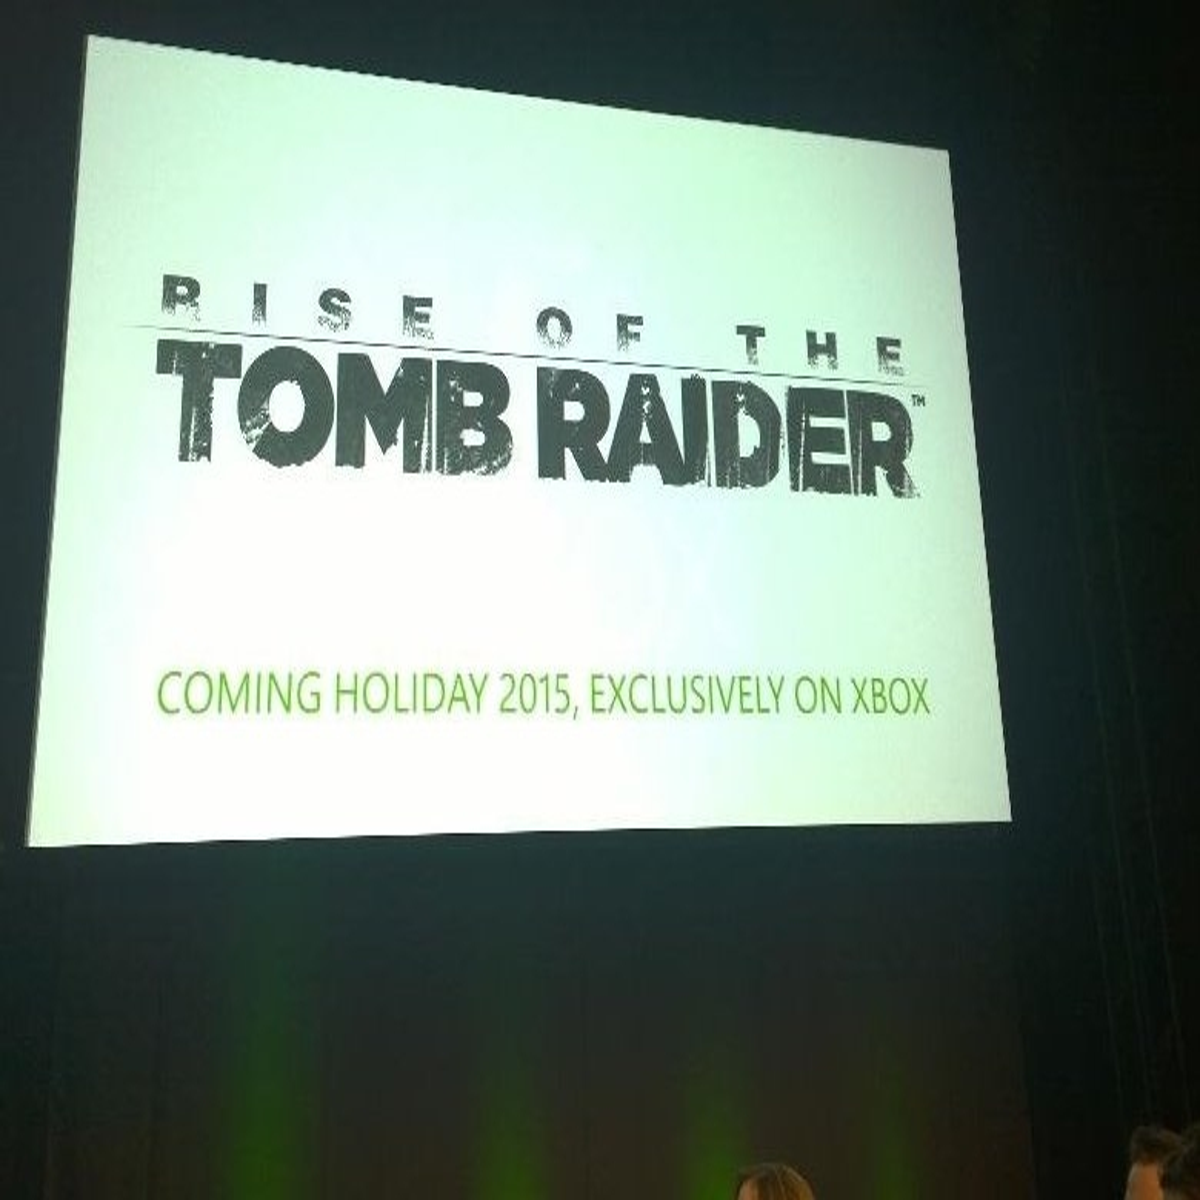 Xbox Game Pass terá Far Cry 6, Rise of the Tomb Raider e mais em dezembro -  Outer Space